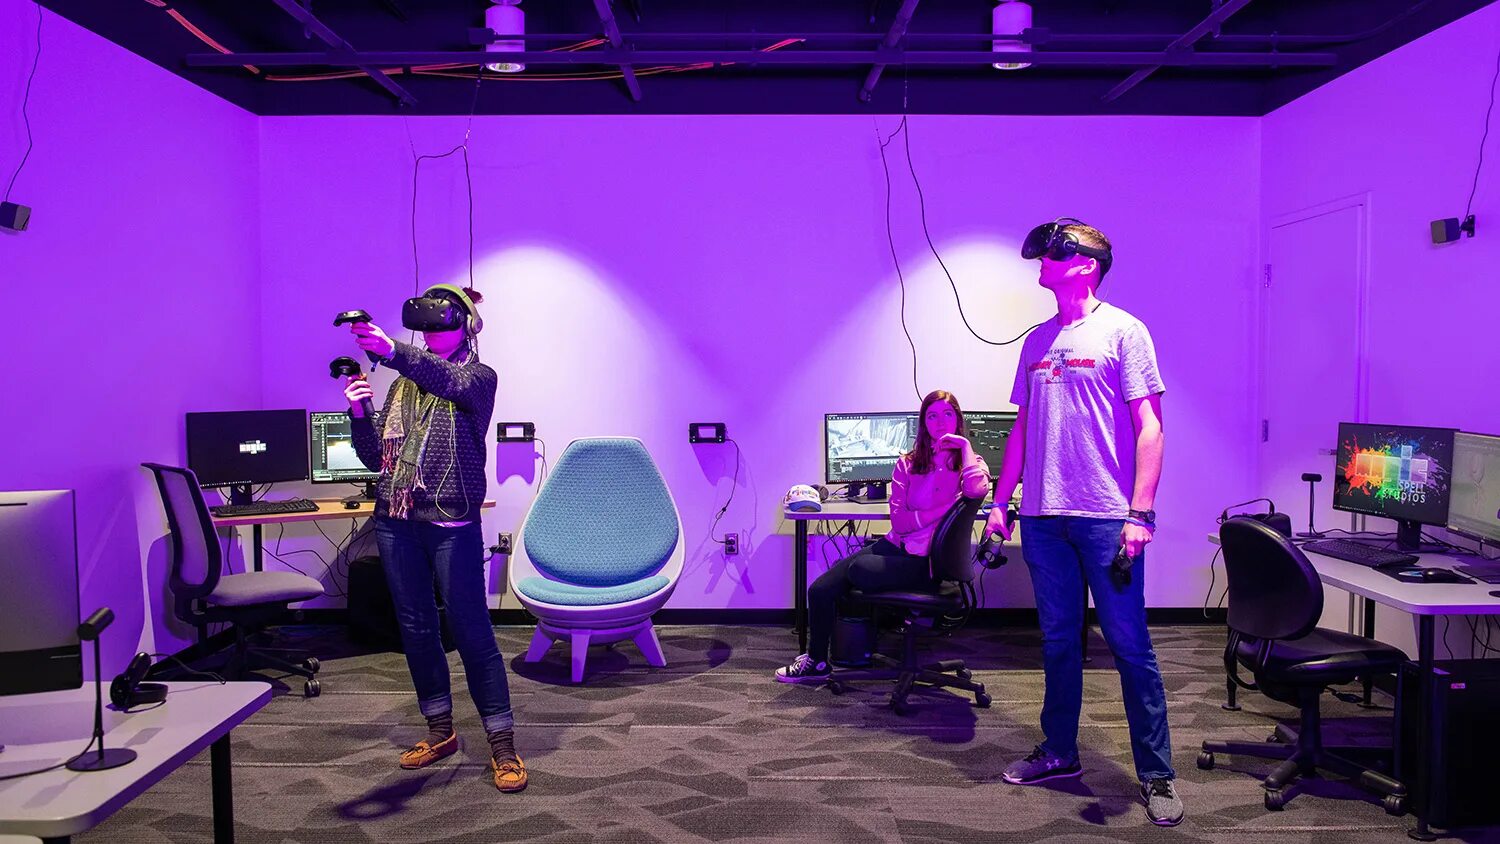 Darkroom vr. The Lab VR. Лаборатория VR/ar. Химическая лаборатория в виртуальной реальности. Ar реальность.